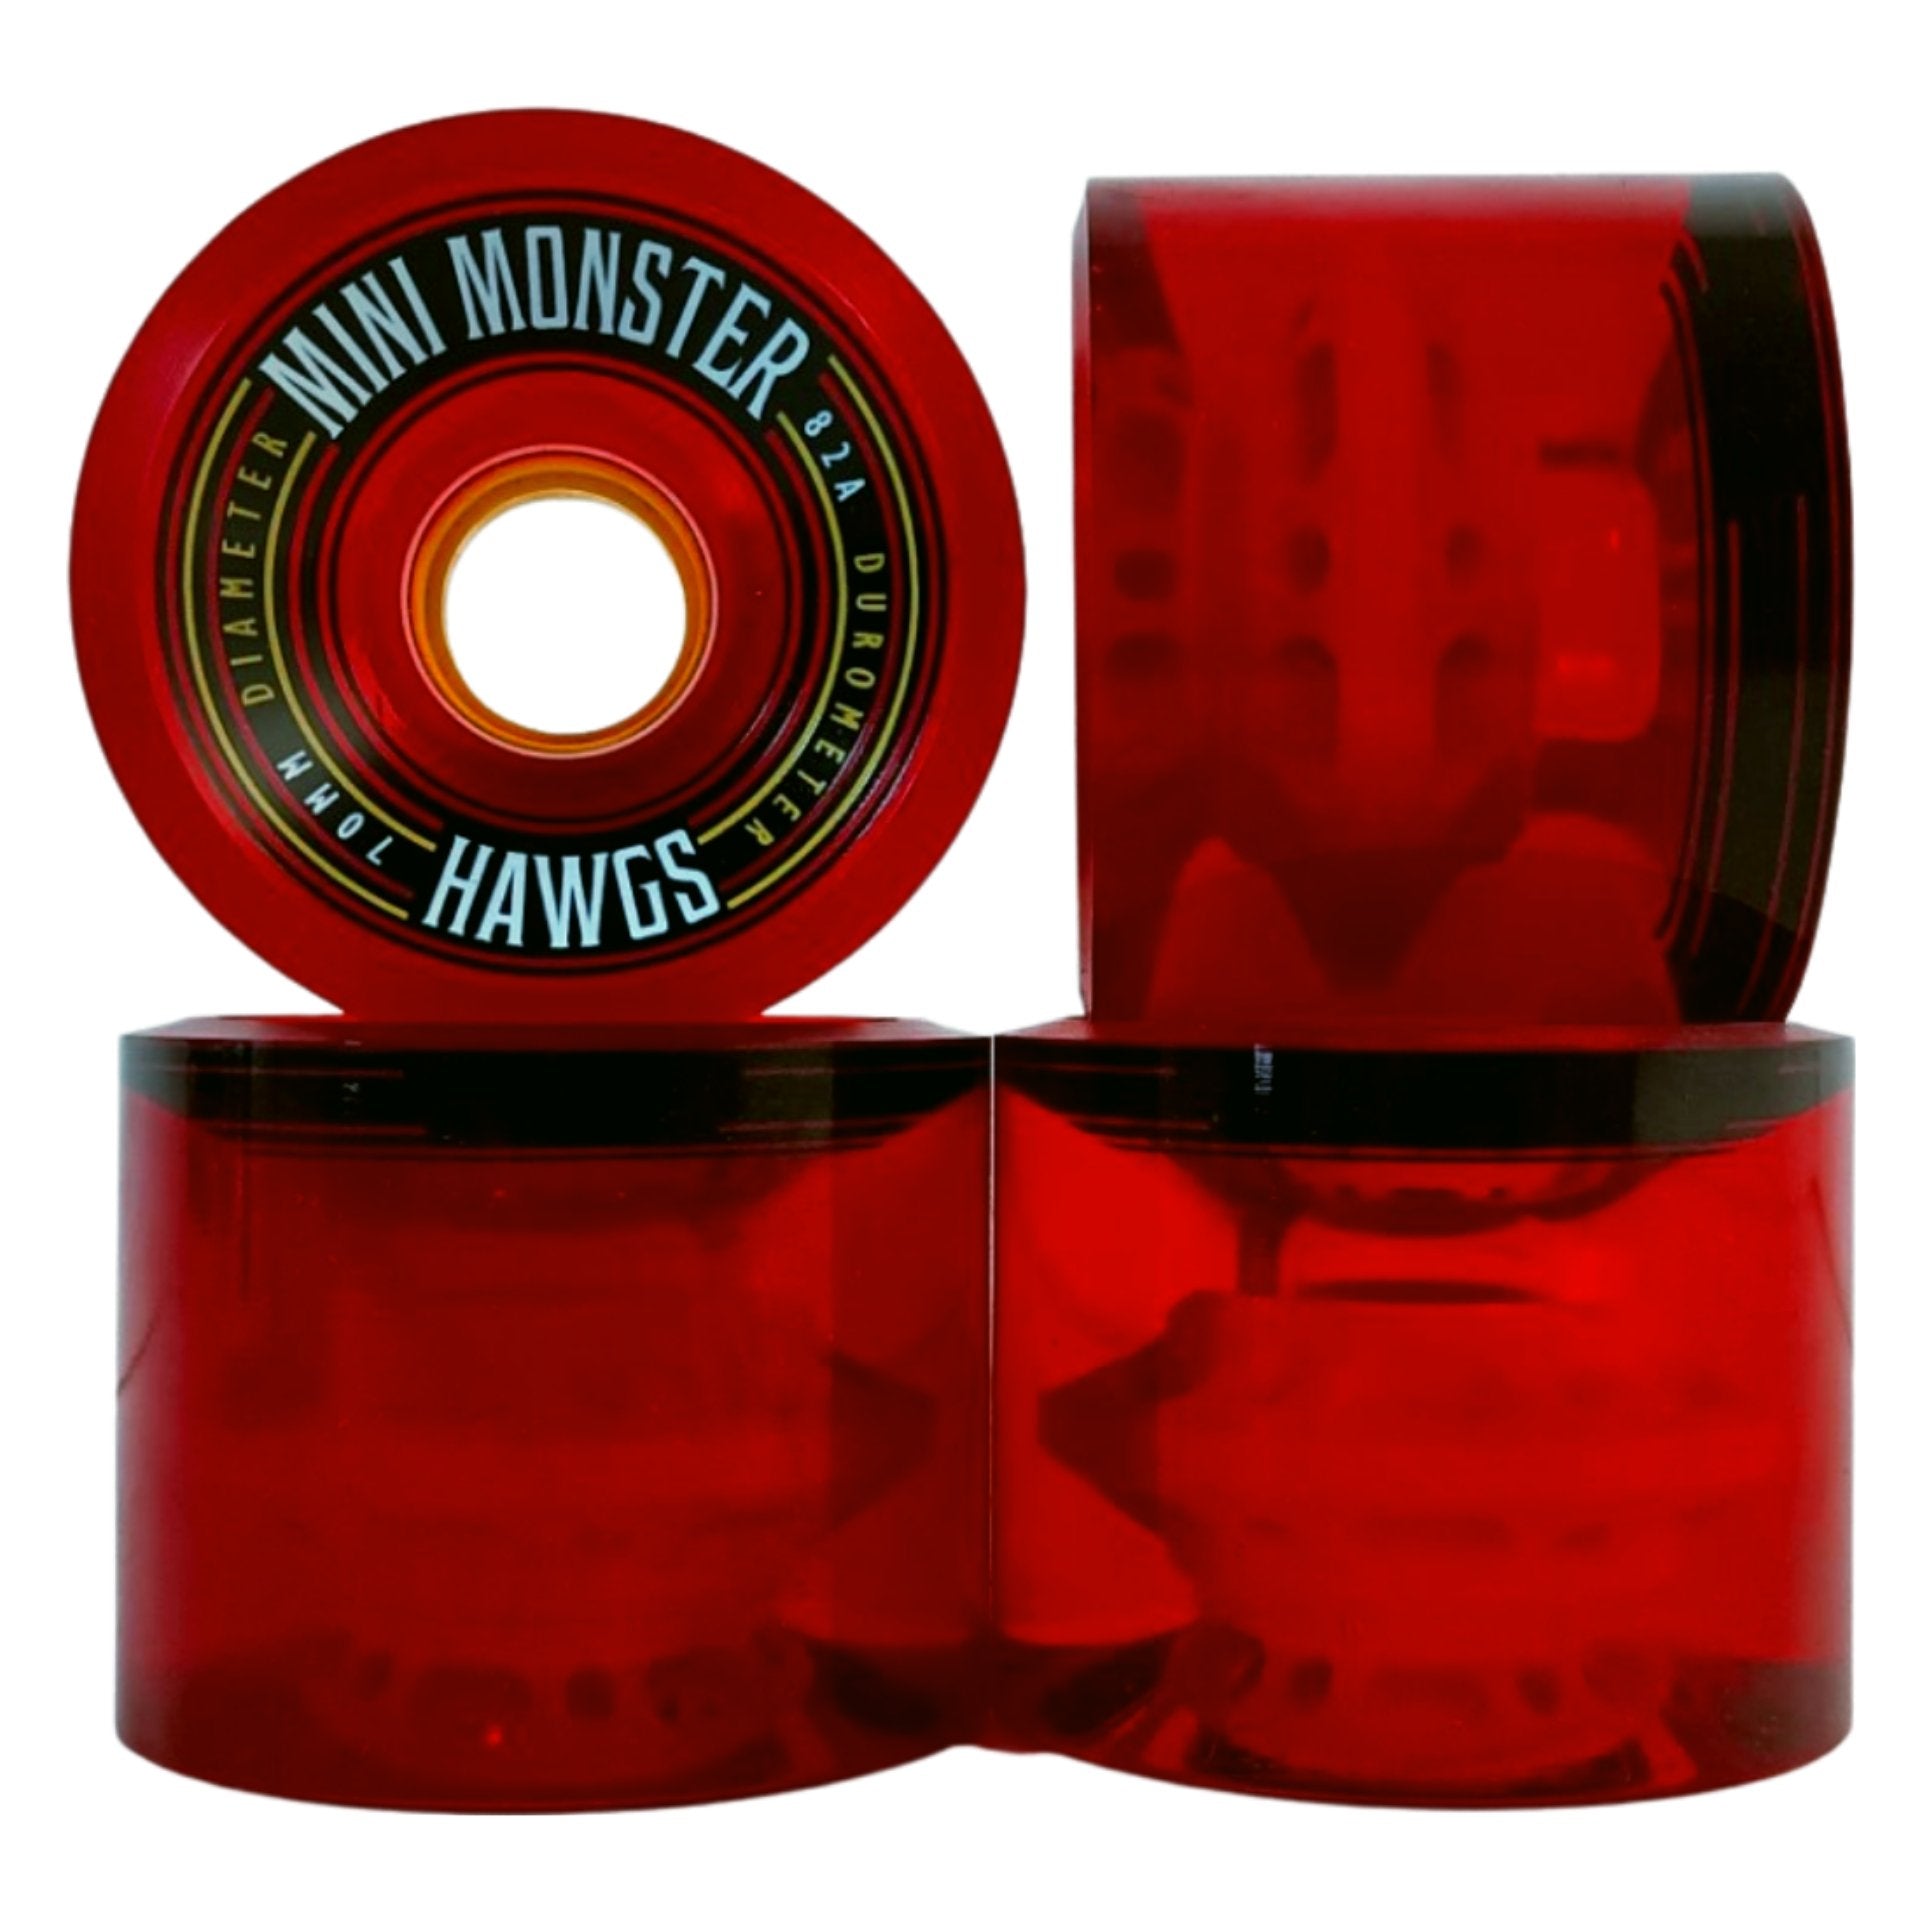 70mm Hawgs Mini Monster Wheels - MUIRSKATE